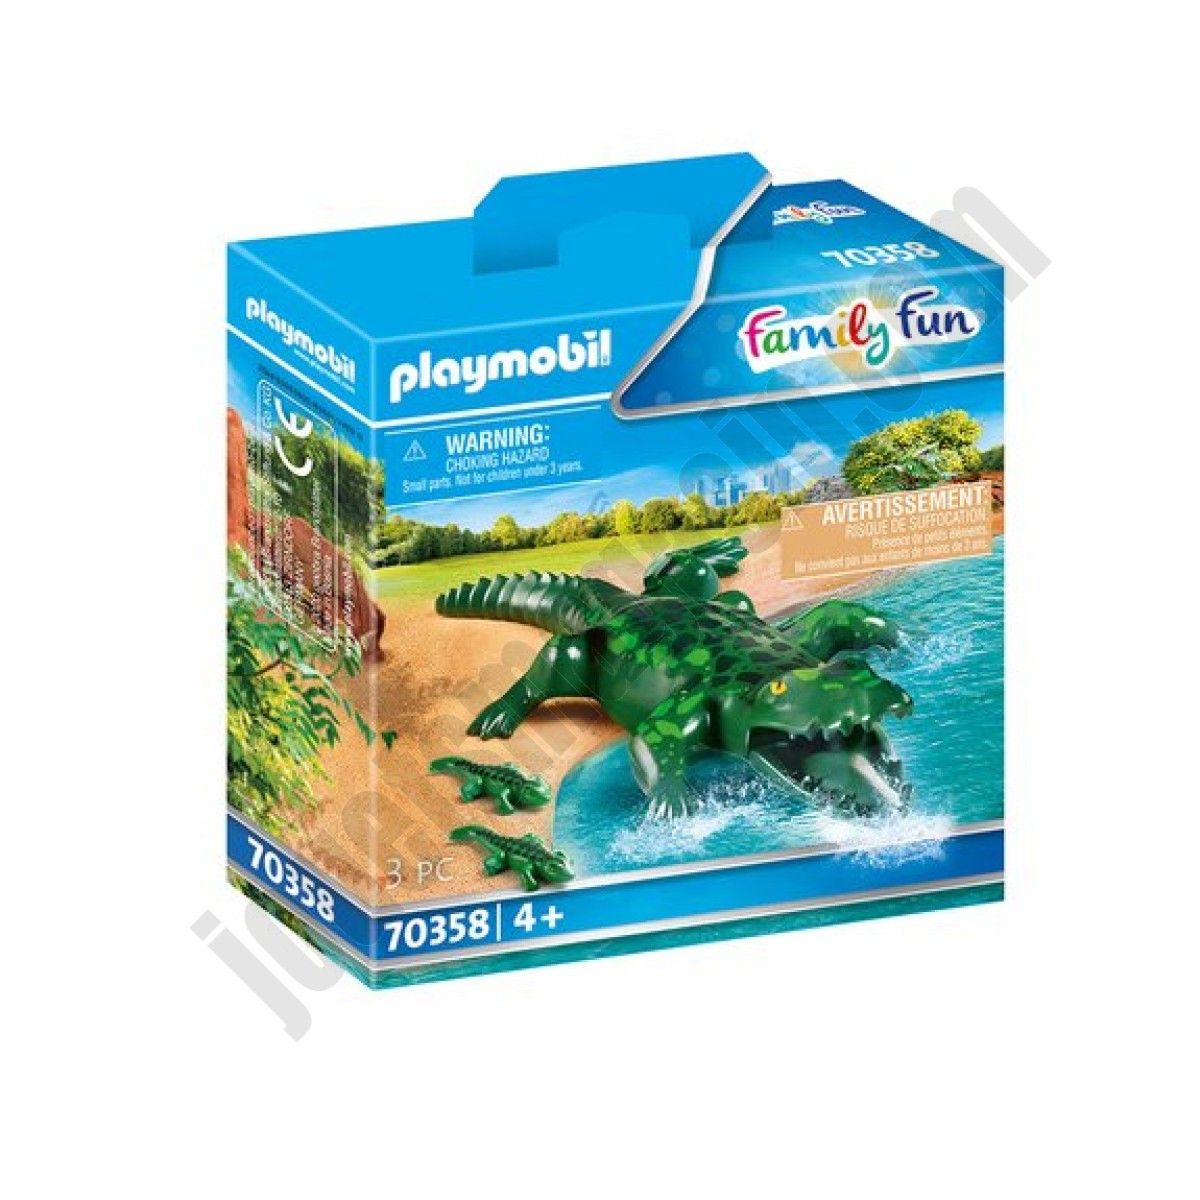 Alligator avec ses petits Playmobil Family Fun 70358 En promotion - Alligator avec ses petits Playmobil Family Fun 70358 En promotion